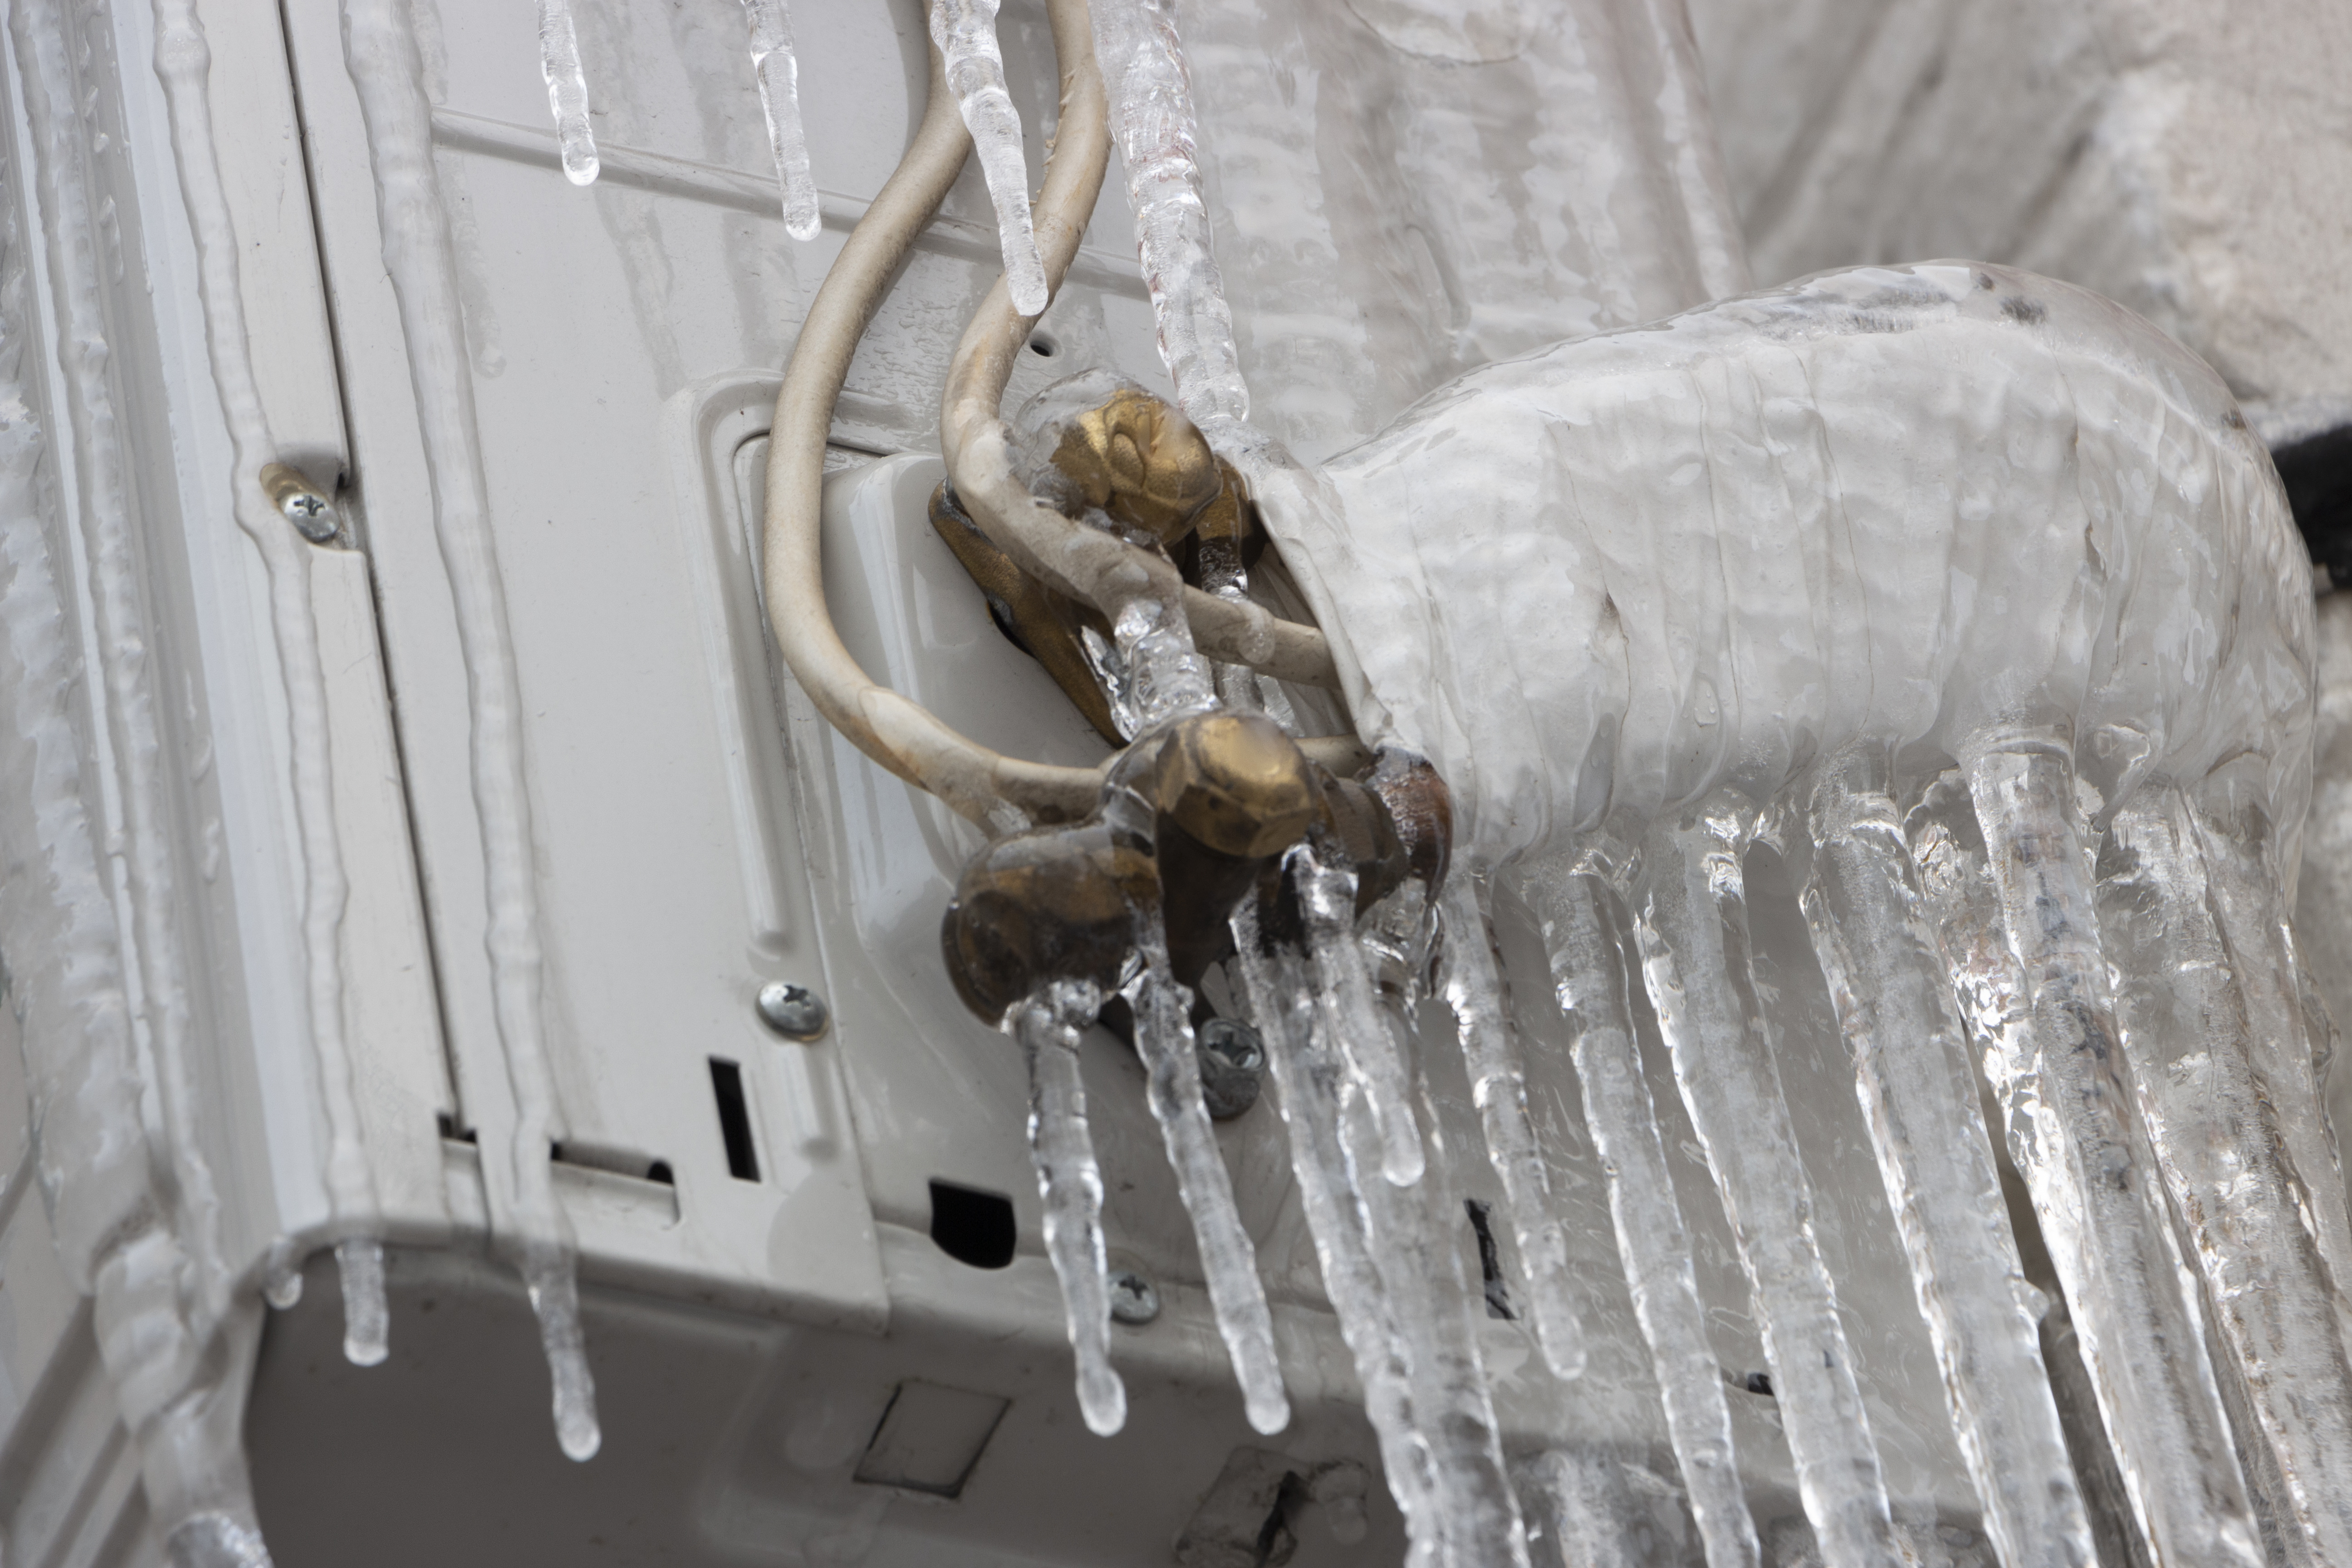 frozen air conditioner